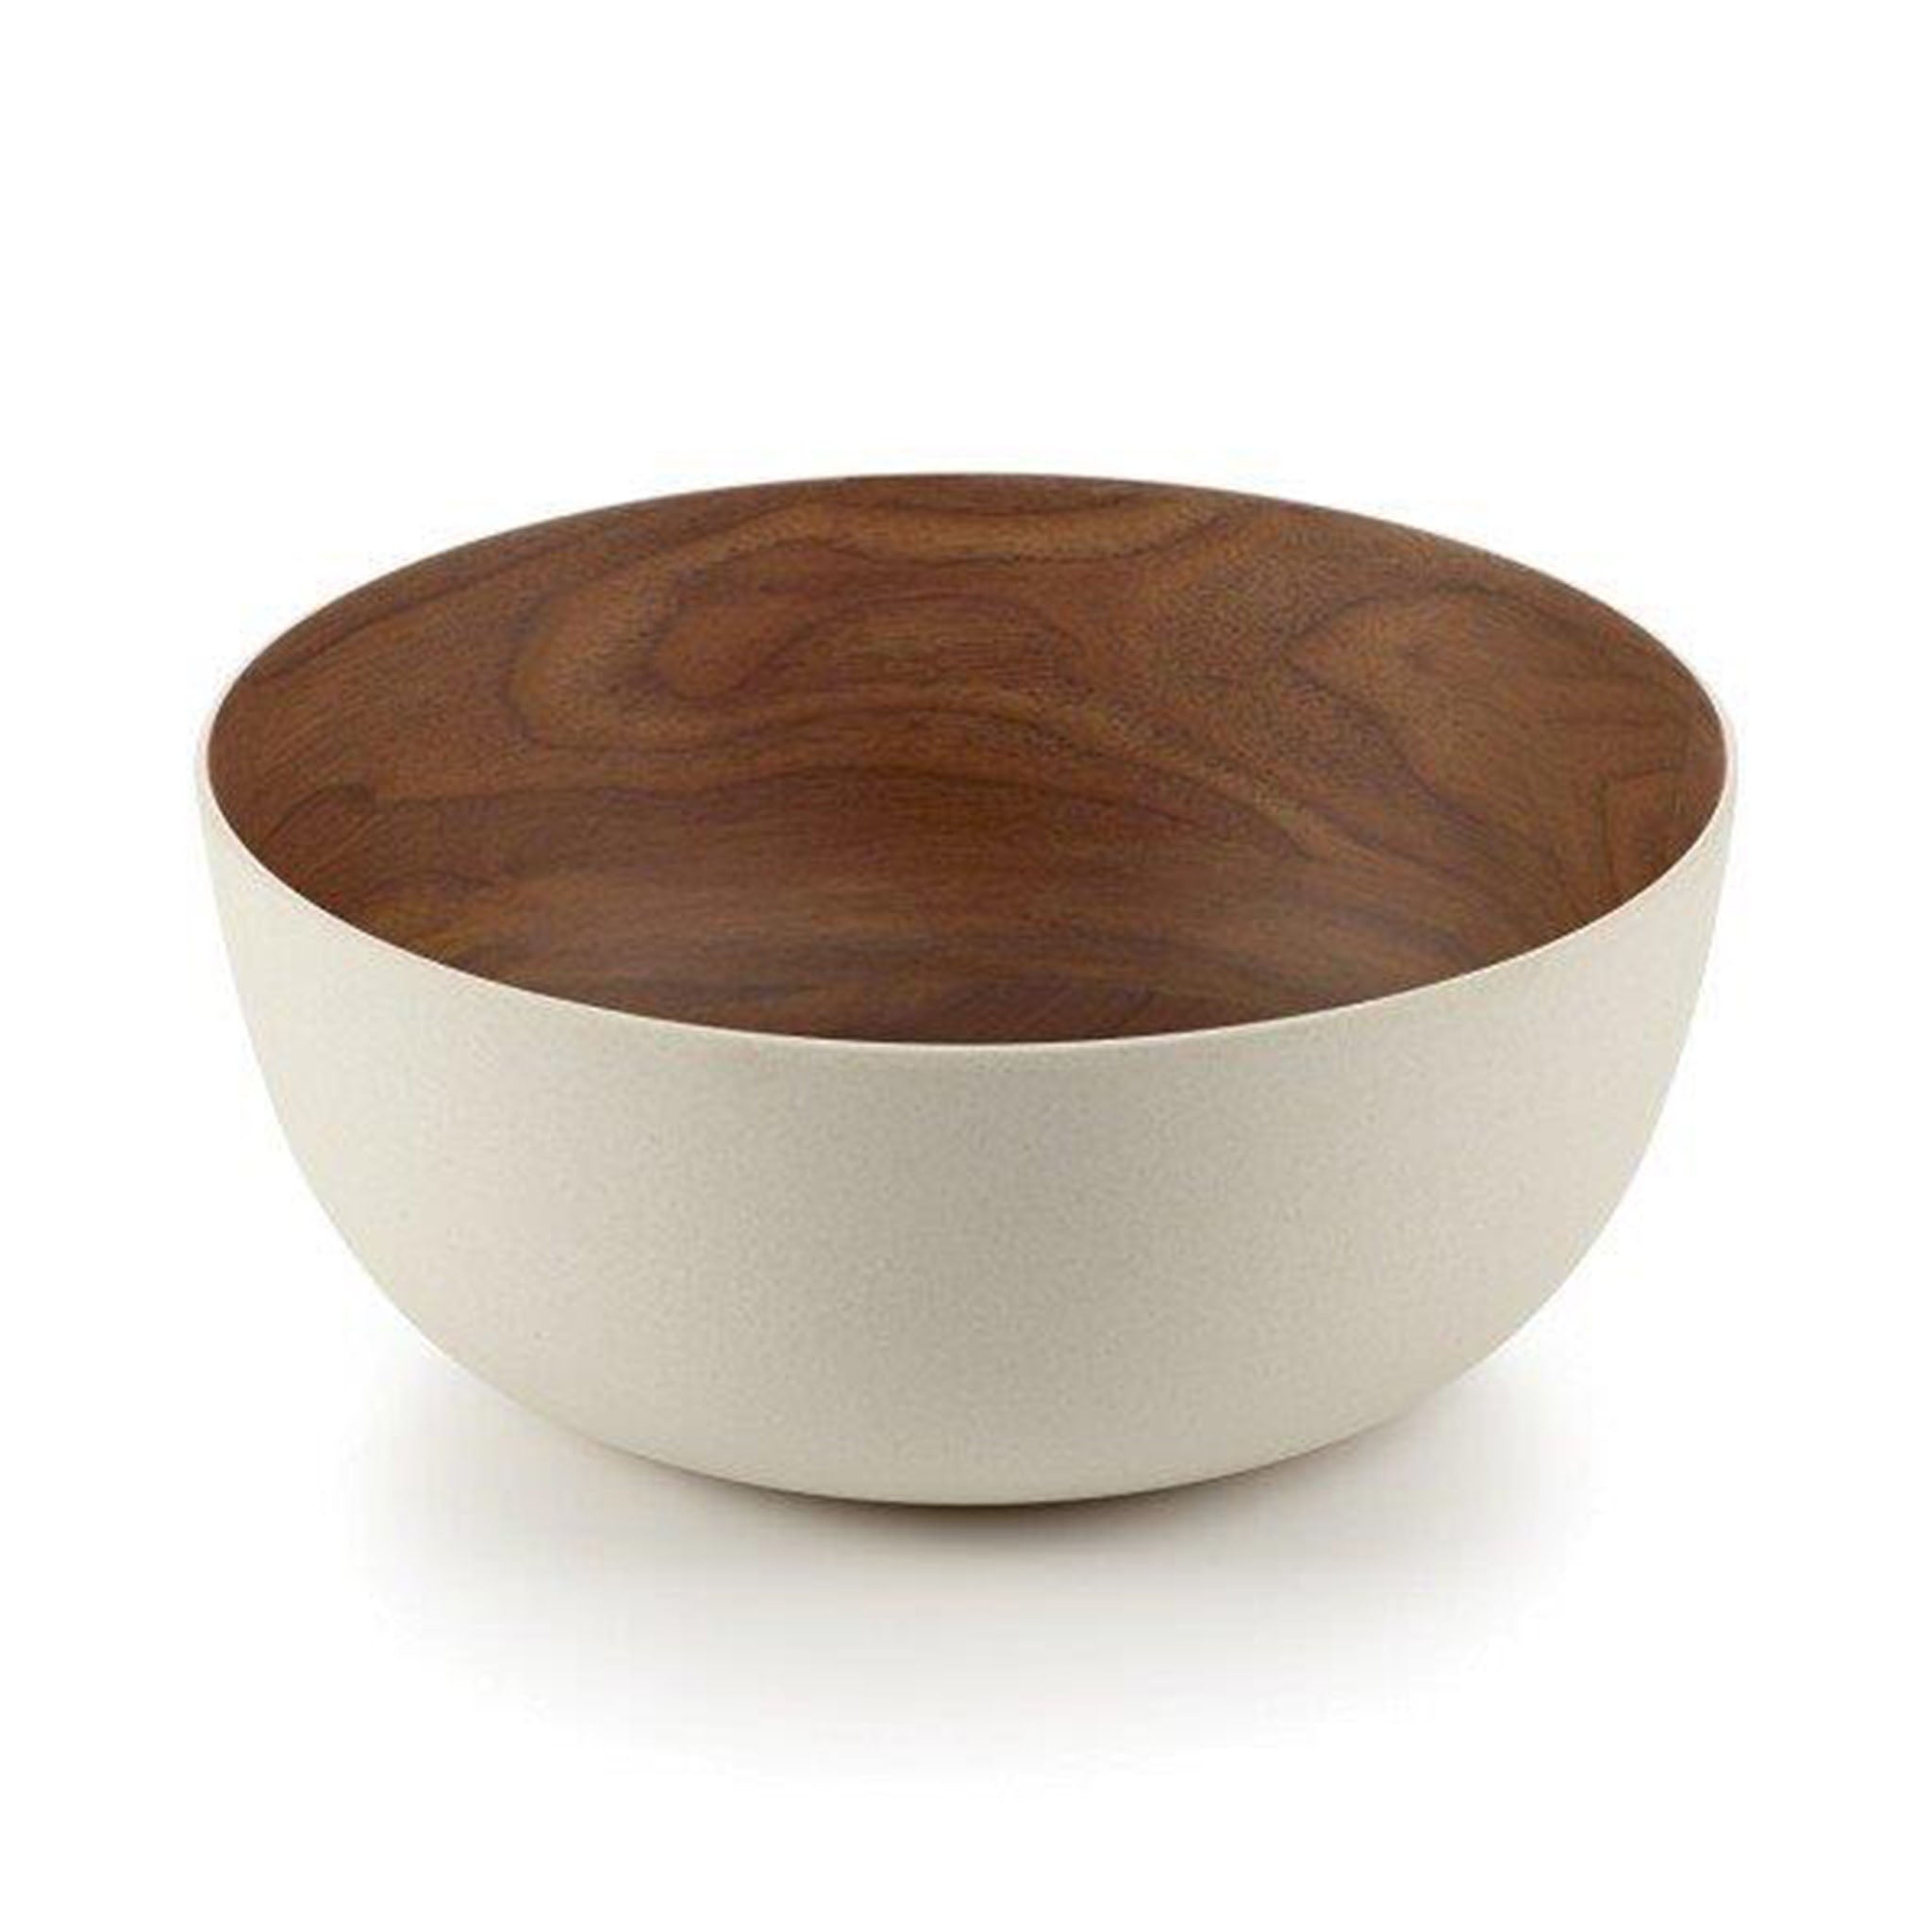 Bamboo Walnut Medium Bowl, 23 Cm